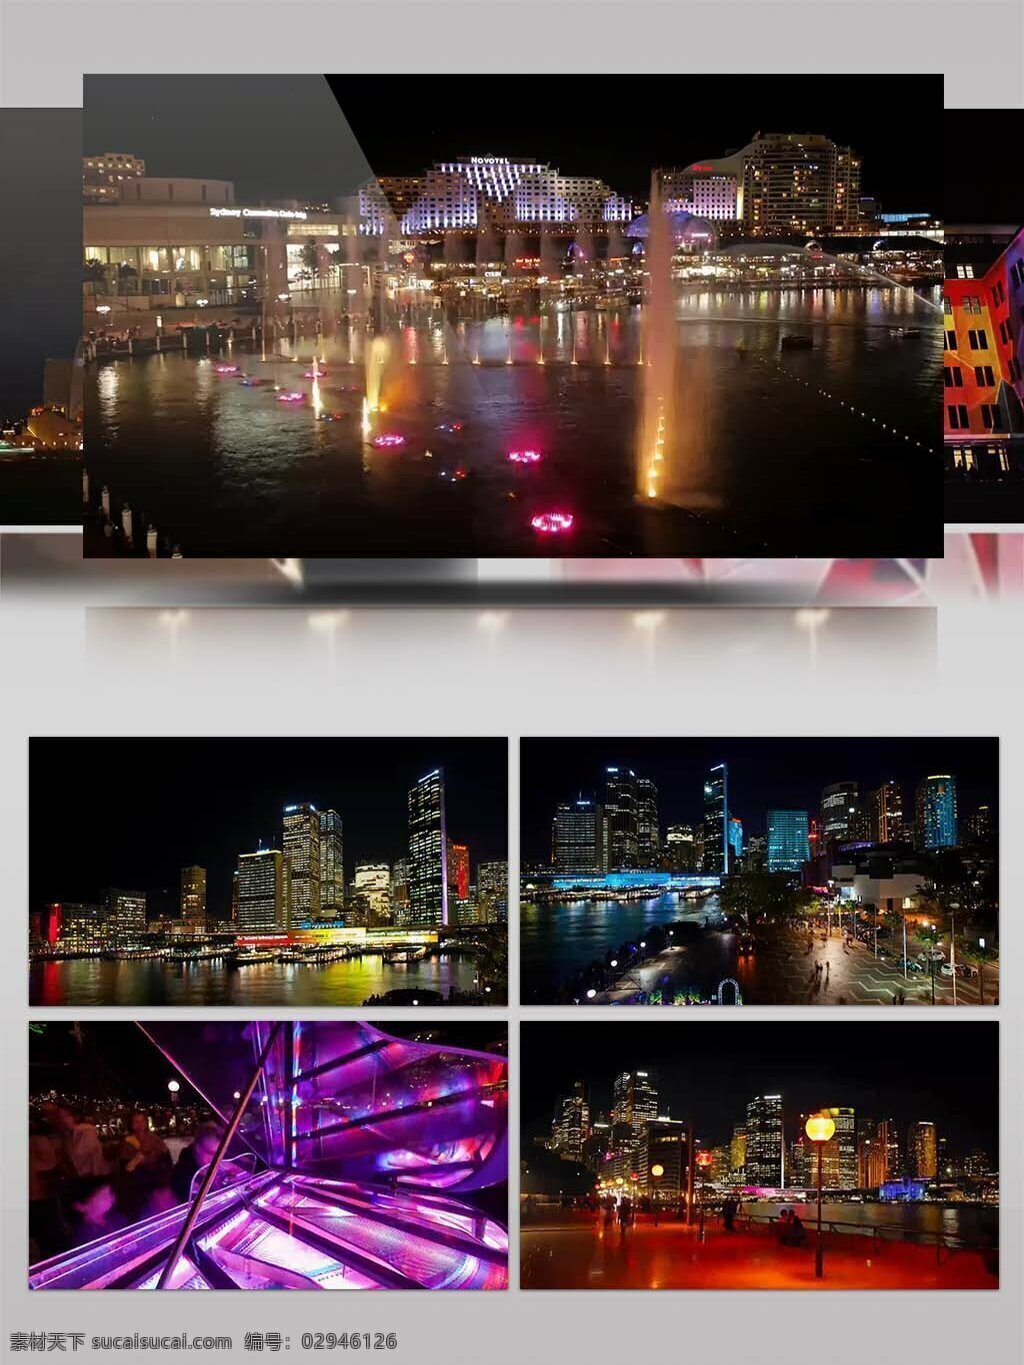 4k 超 清 实拍 悉尼 城市 人文景观 视频 超清 航拍 澳大利亚 悉尼风光 悉尼景观 悉尼宣传 澳大利亚视频 歌剧院 海滨大桥 悉尼歌剧院